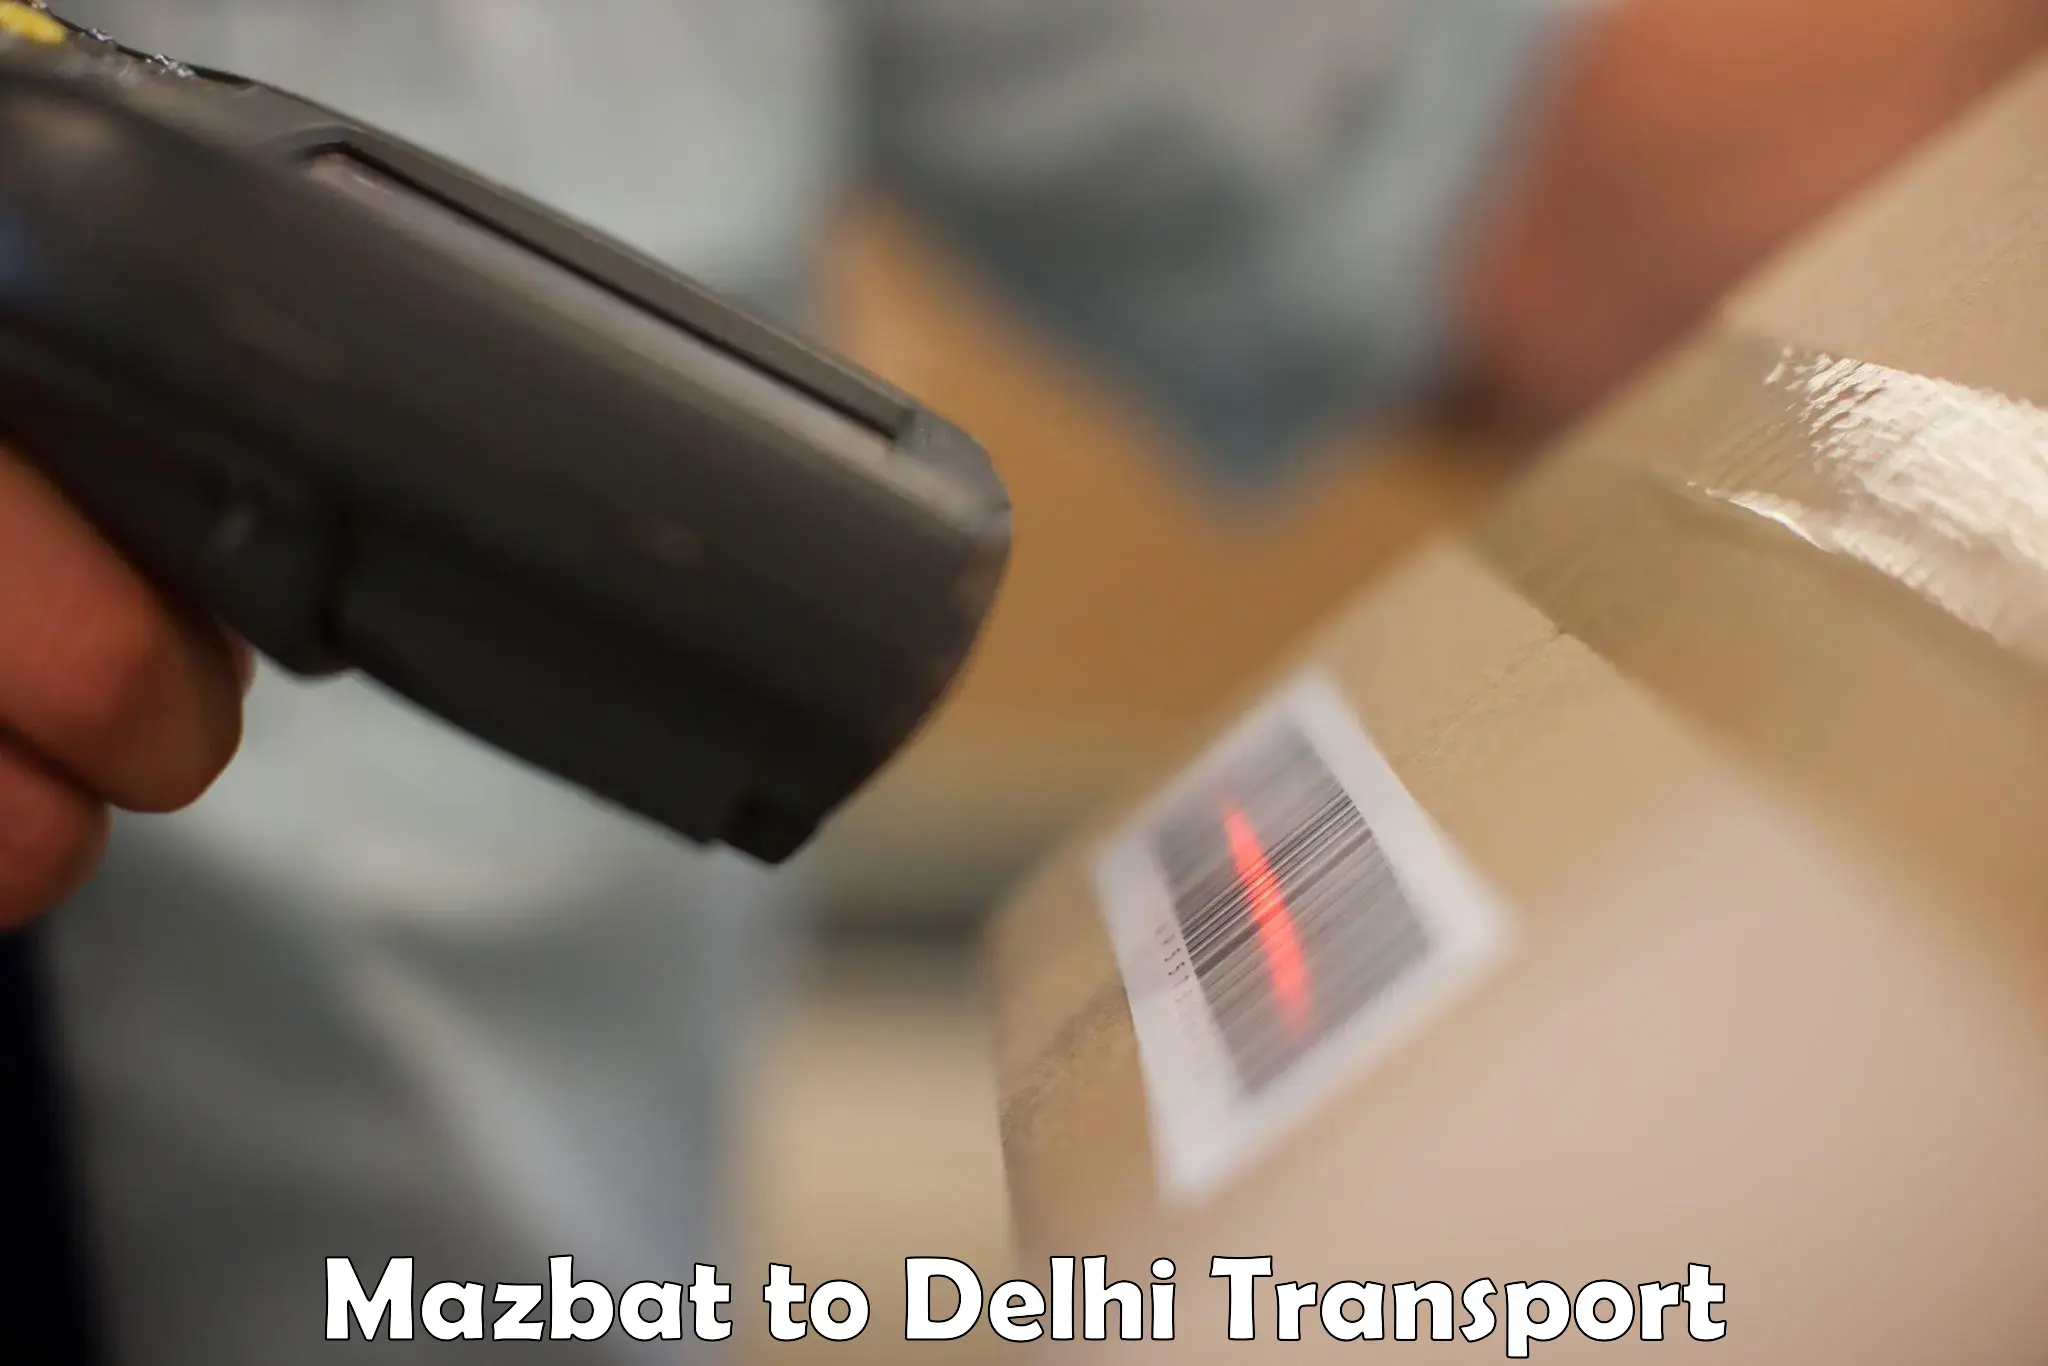 Delivery service Mazbat to Delhi